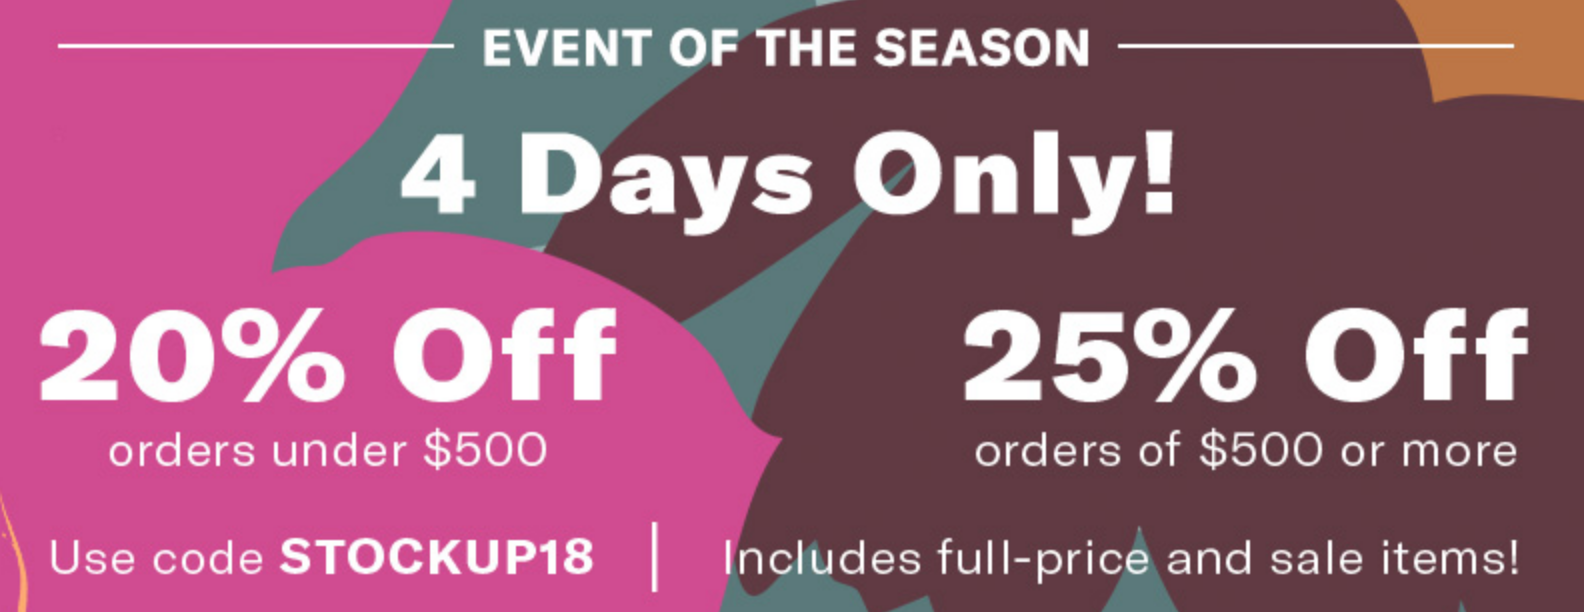 shopbop event of the season, shopbop sale 2018, shopbop event of the season 2018, 2018 shopbop sale, fall sale, fall shopbop sale